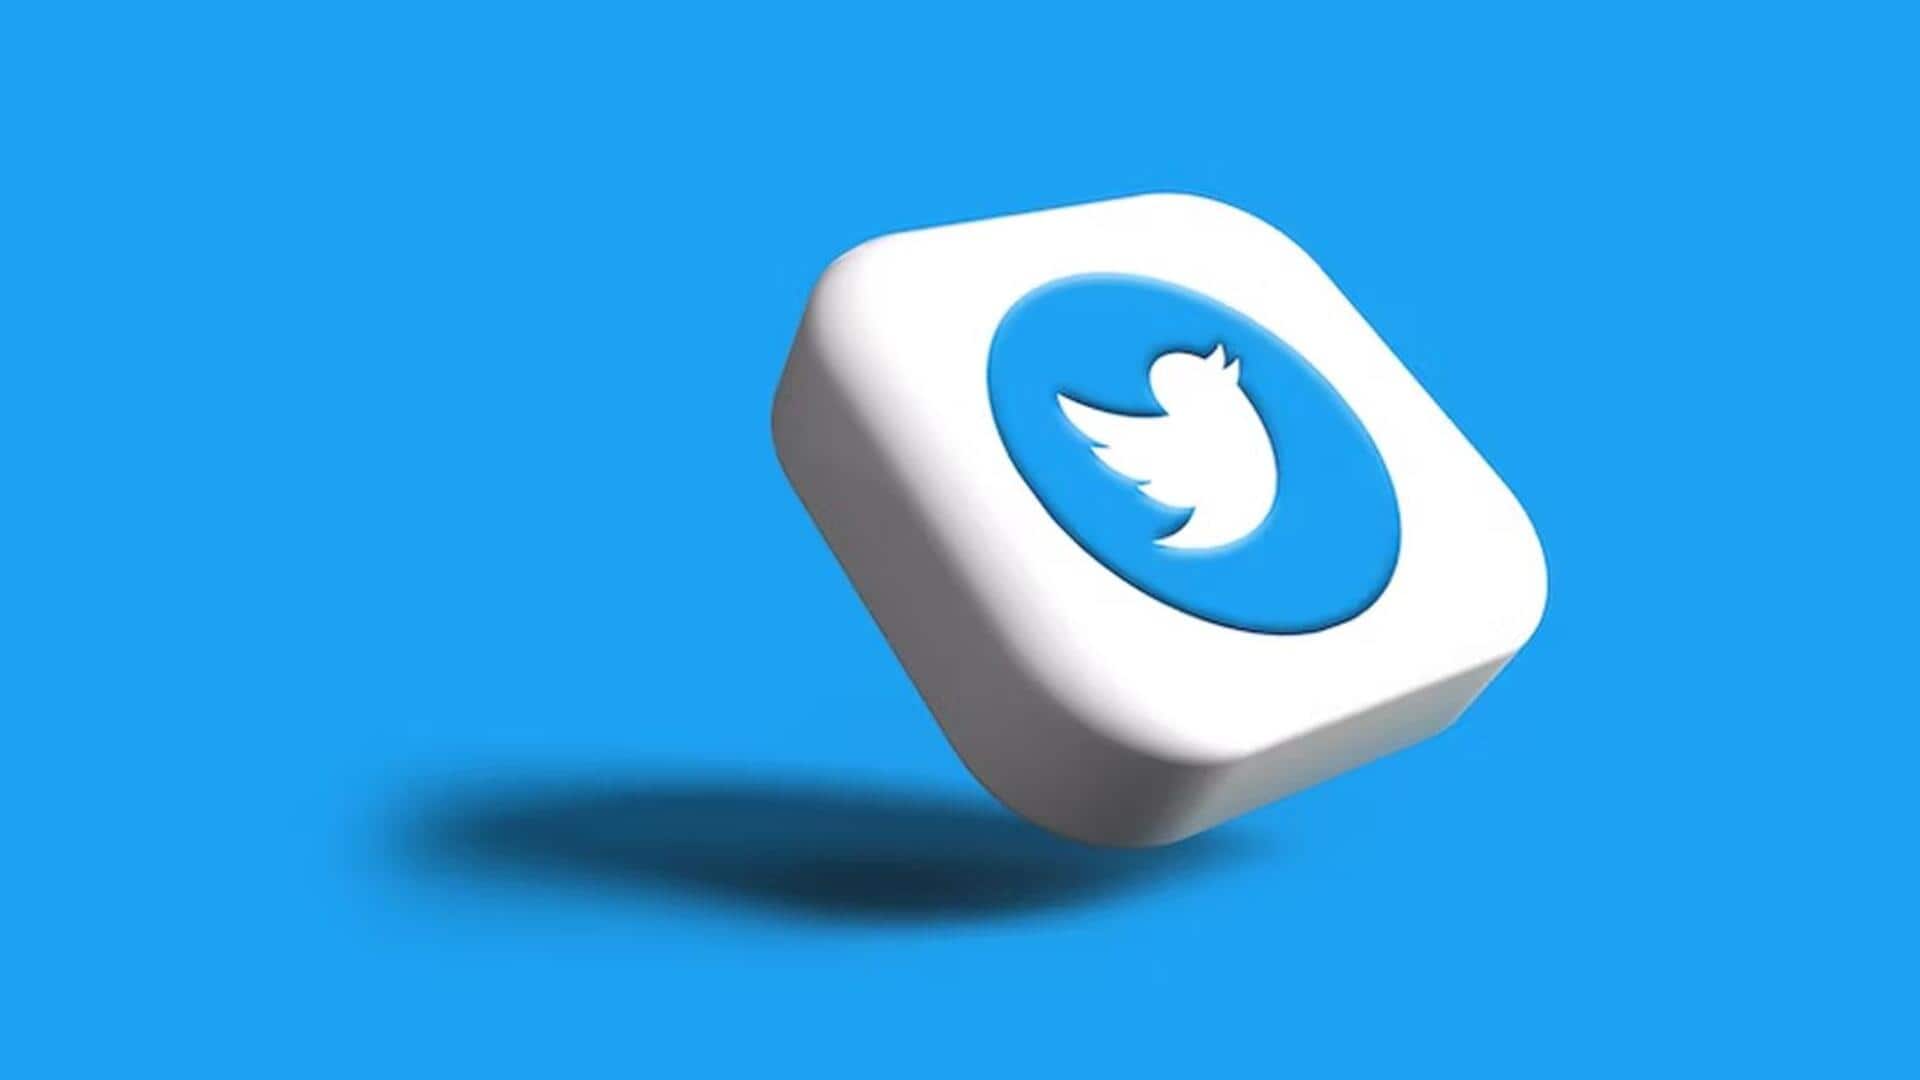 ट्विटर यूजर्स का अकाउंट डेस्कटॉप से अपने आप हुआ लॉग आउट, हजारों लोगों ने किया रिपोर्ट